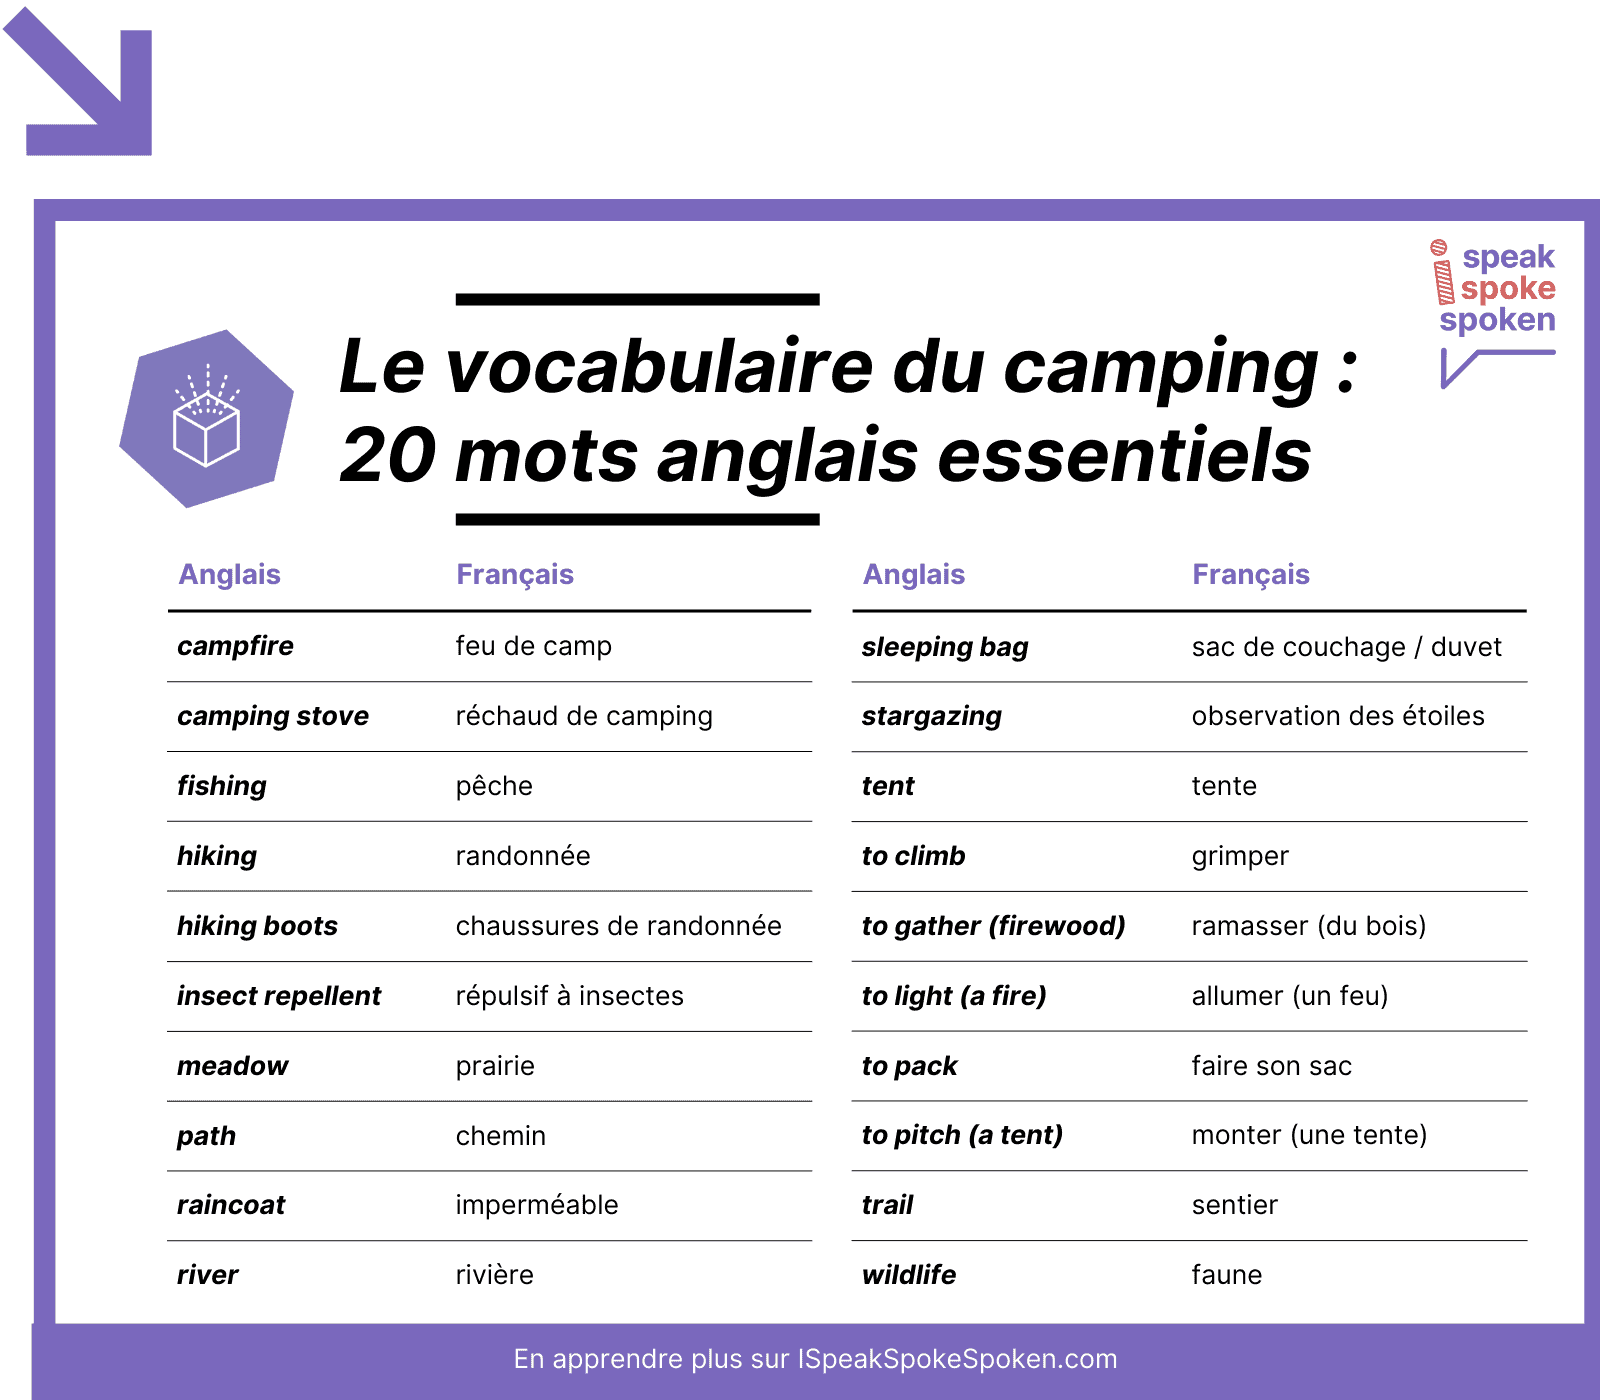 20 mots de vocabulaire anglais essentiels liés au camping